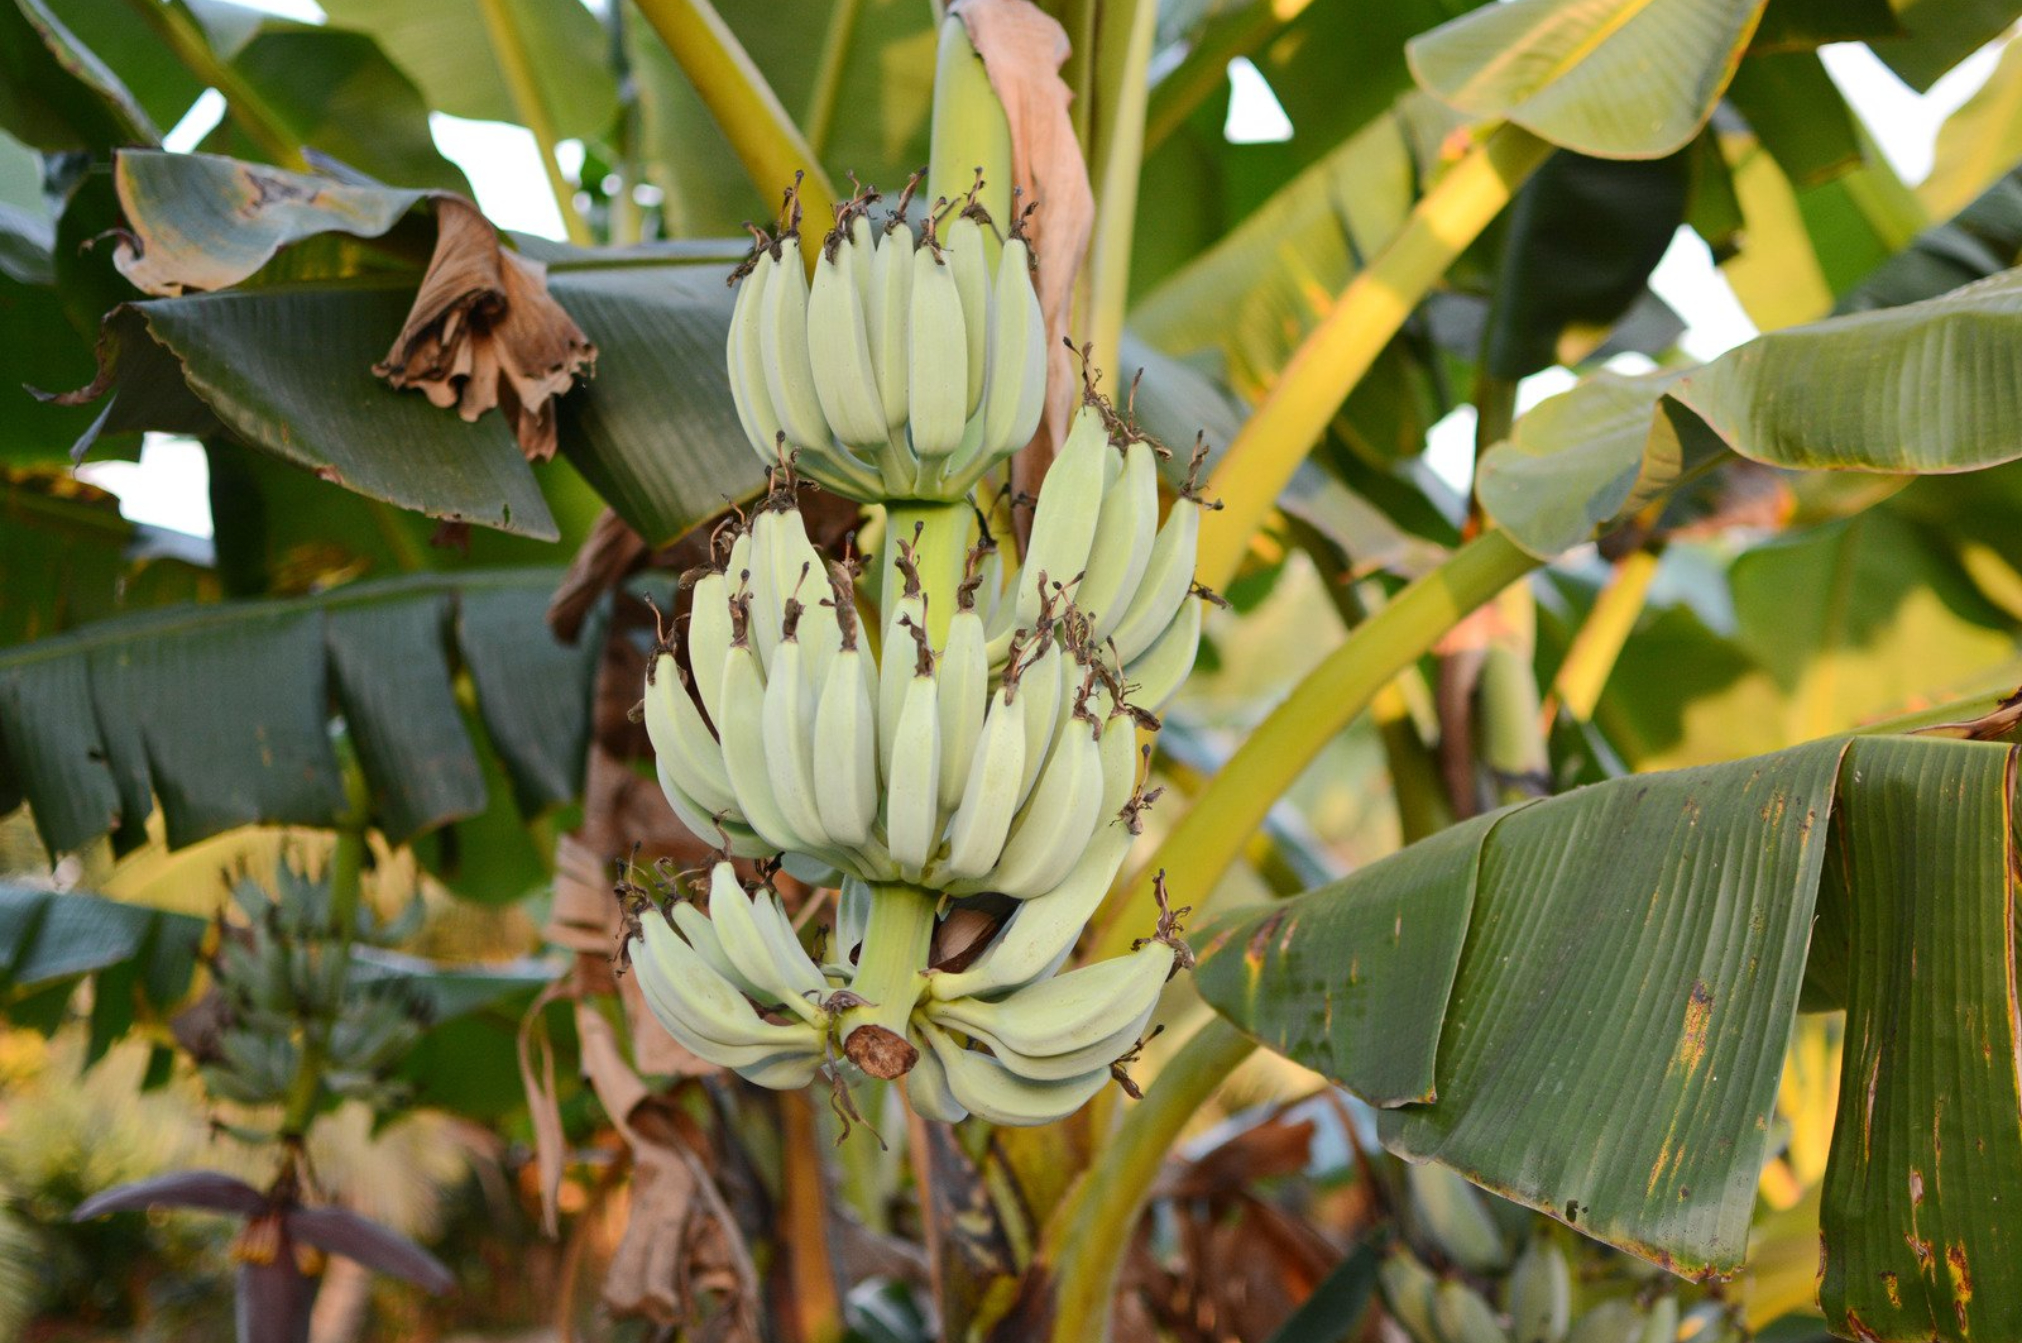 Μπανάνα: Η διατροφική αξία του και πως βοηθάει τον οργανισμό